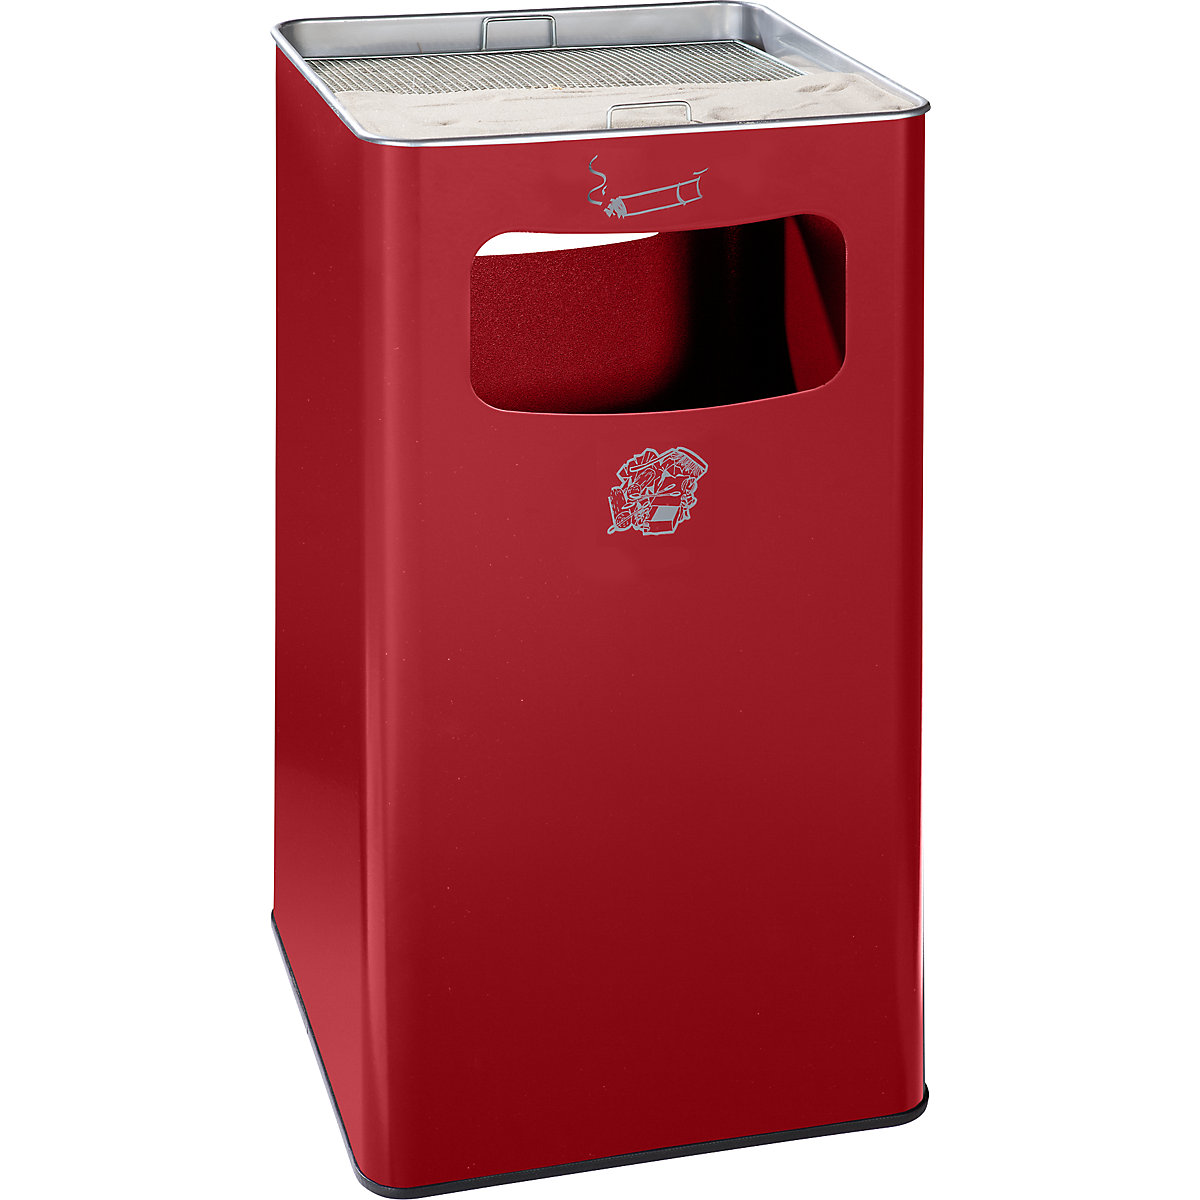 VAR – Combiné cendrier-poubelle, capacité 96 l, l x h x p 430 x 755 x 430 mm, tôle d'acier, rouge feu